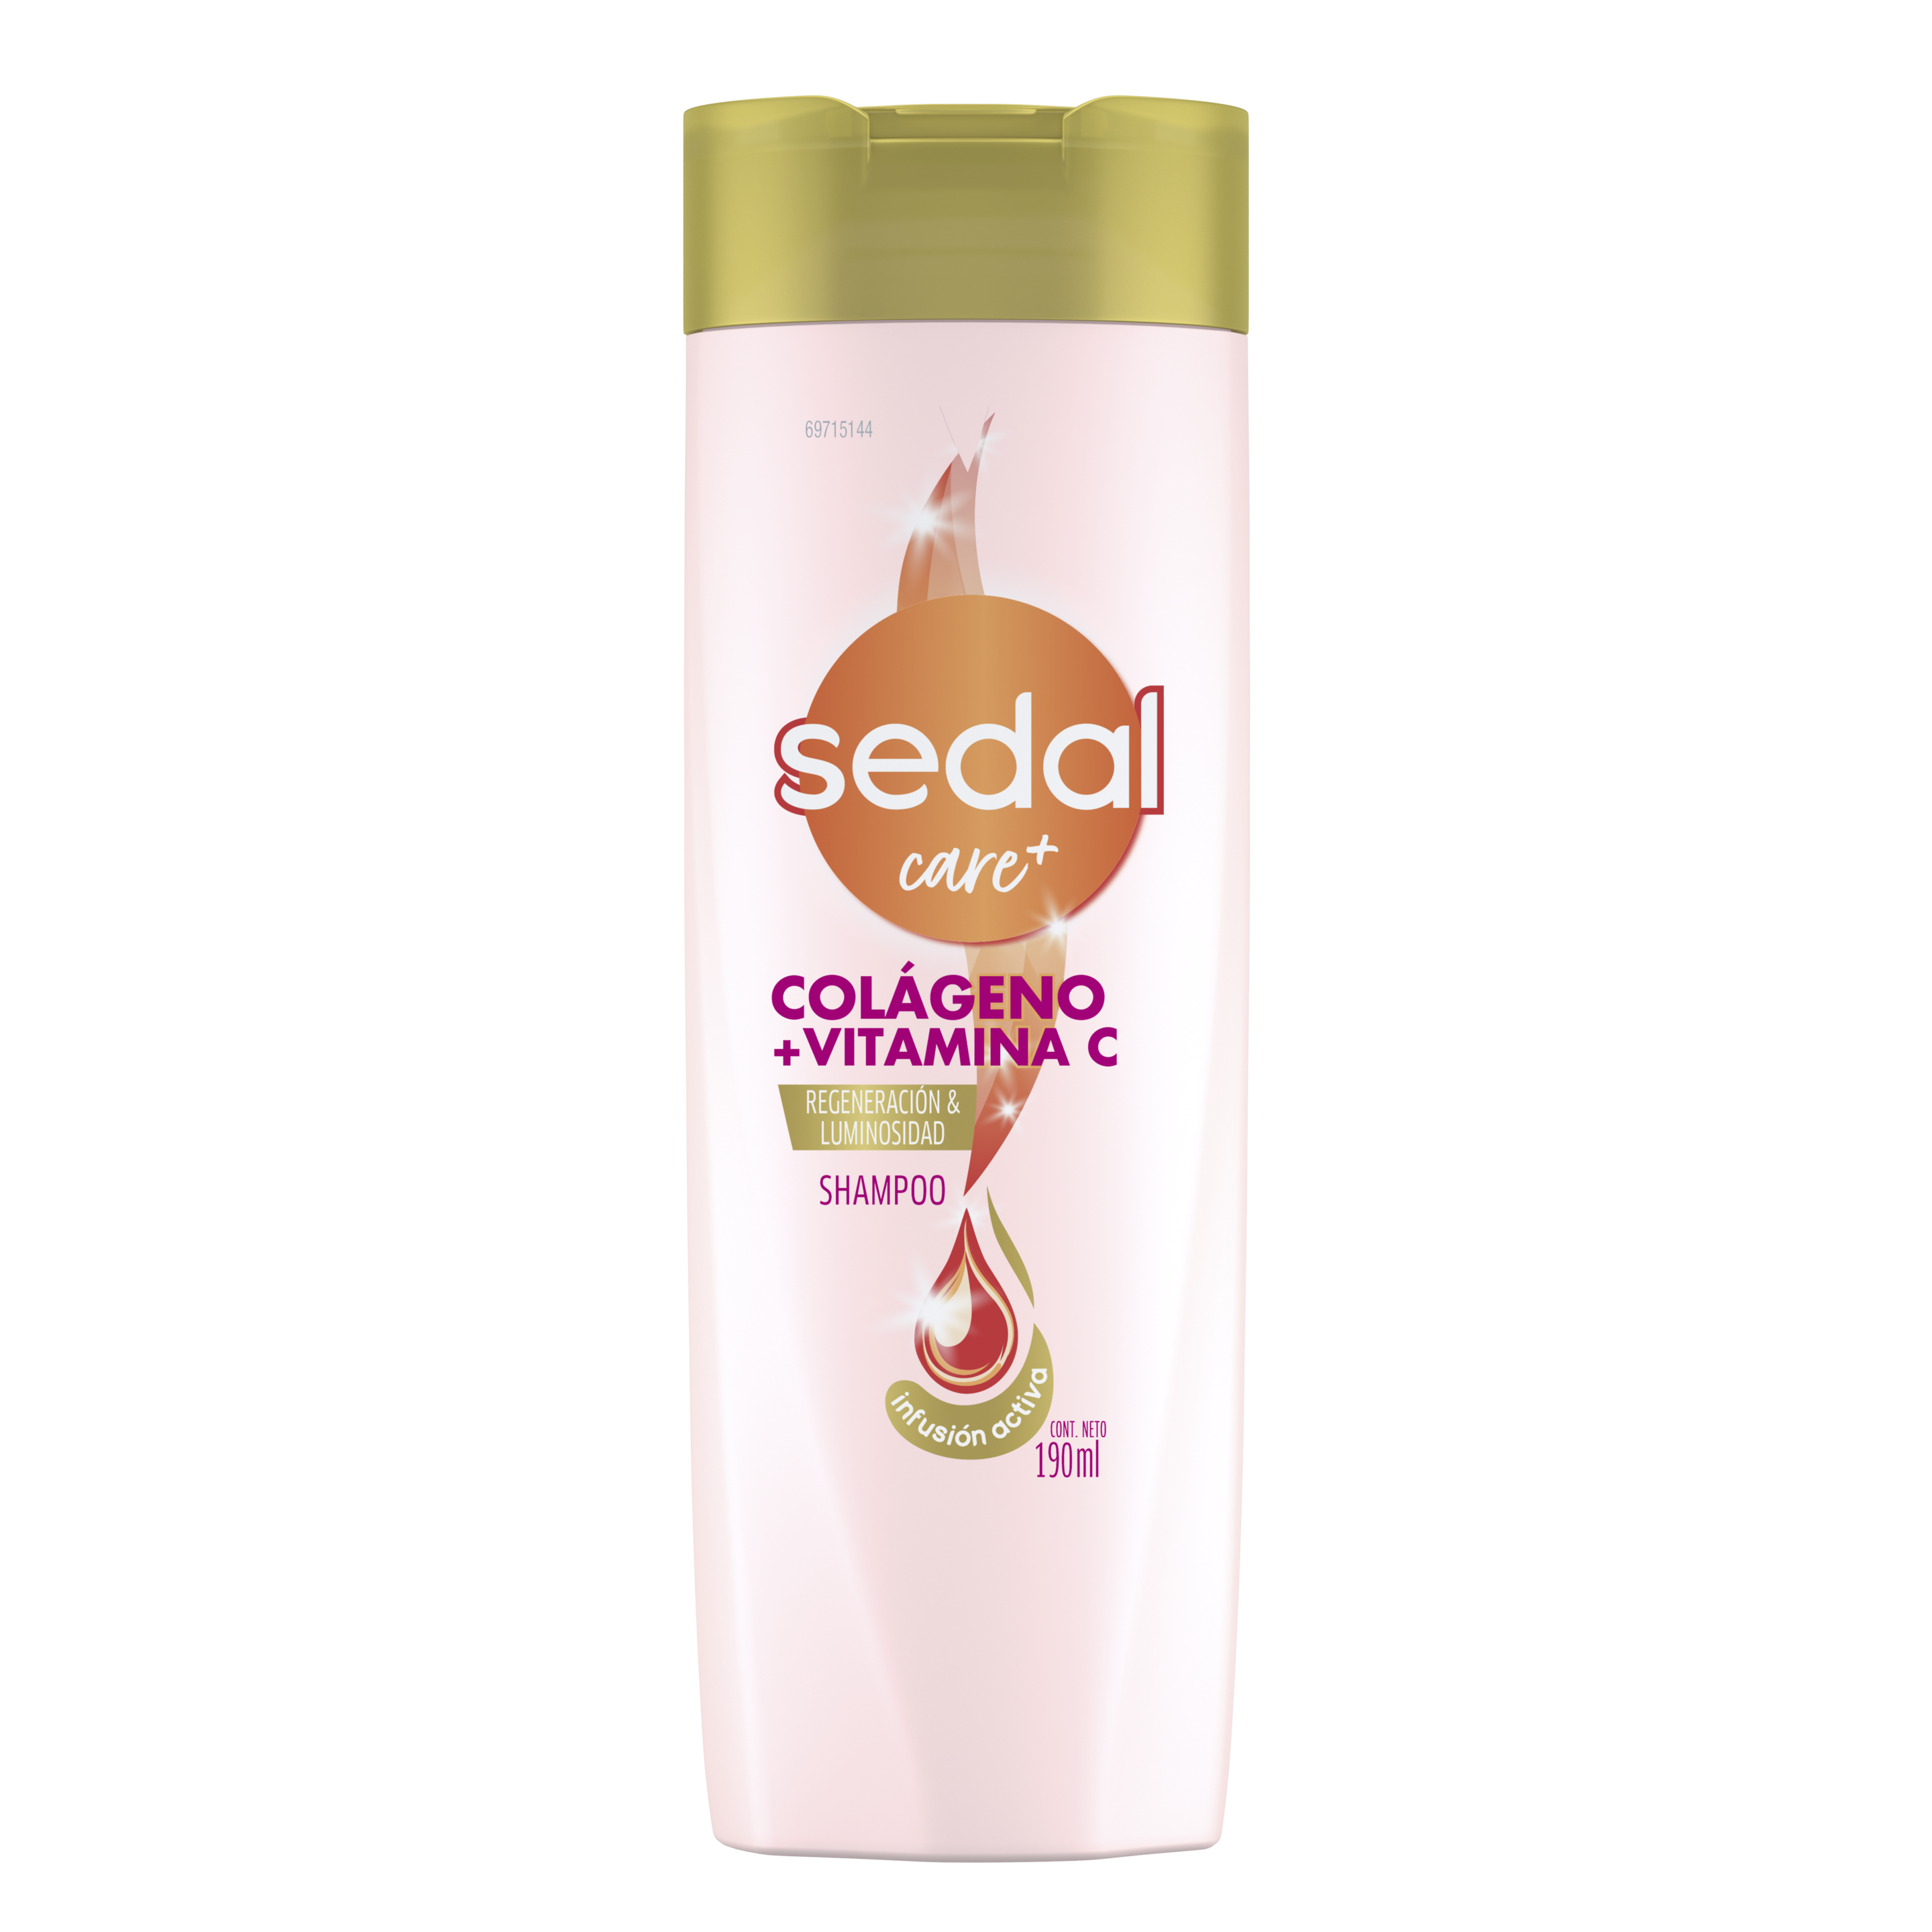 Imagen de envase Sedal Colágeno + Vitamina C Infusión Activa Shampoo 190ml